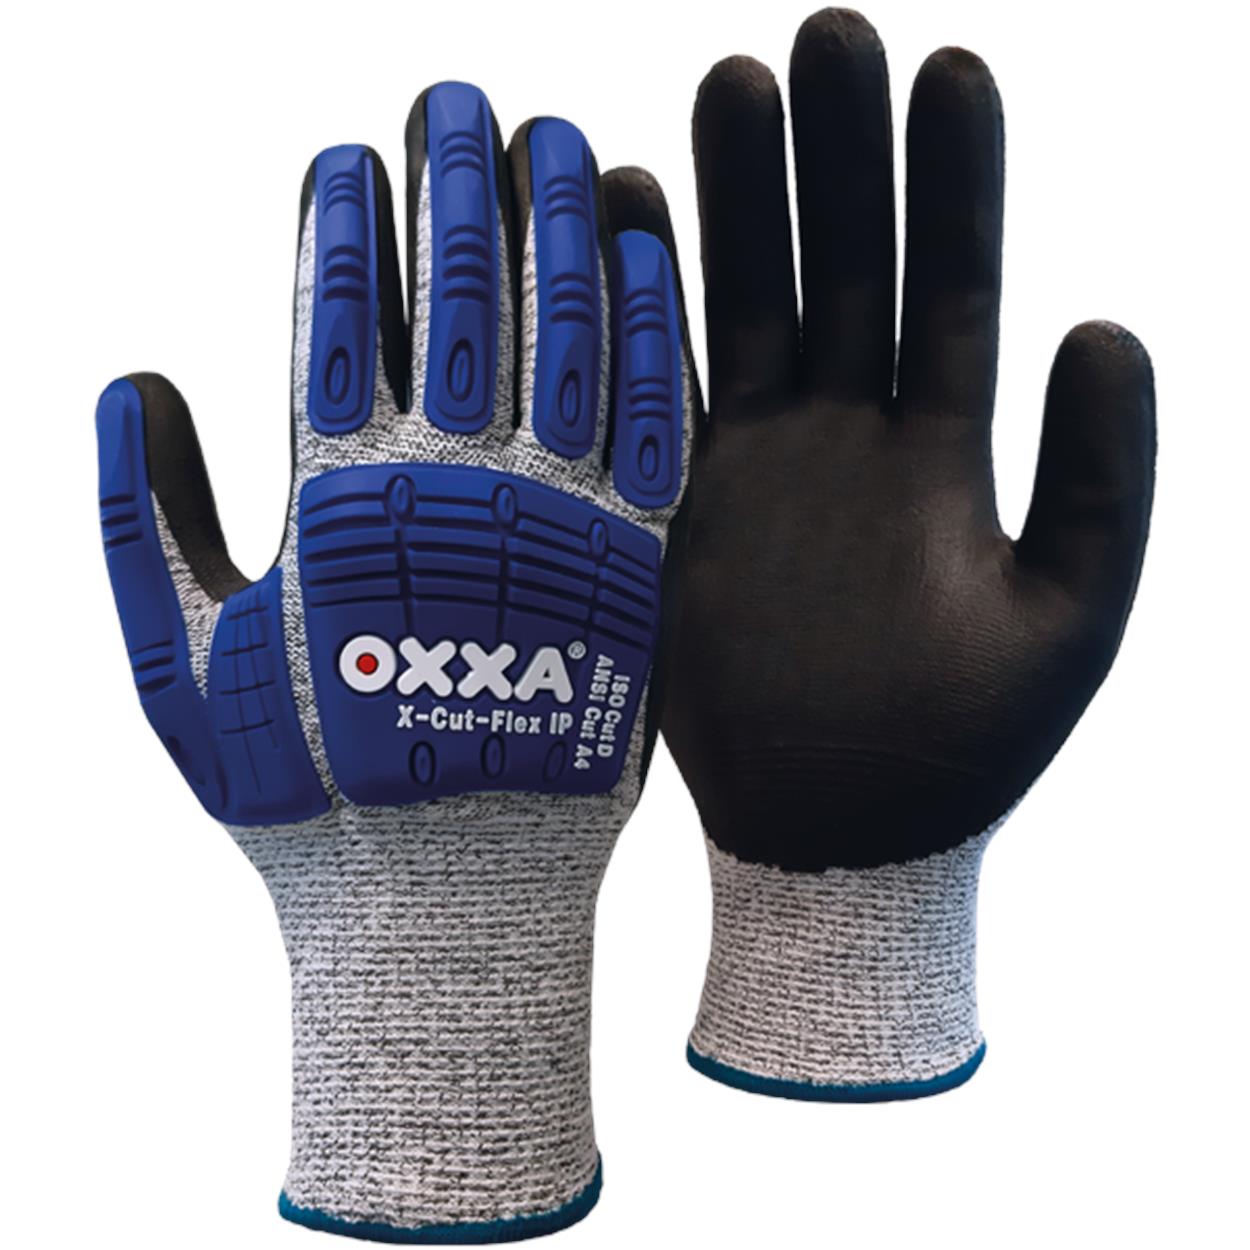 OXXA X-Cut-Flex IP 51-705 impactbestendige handschoen